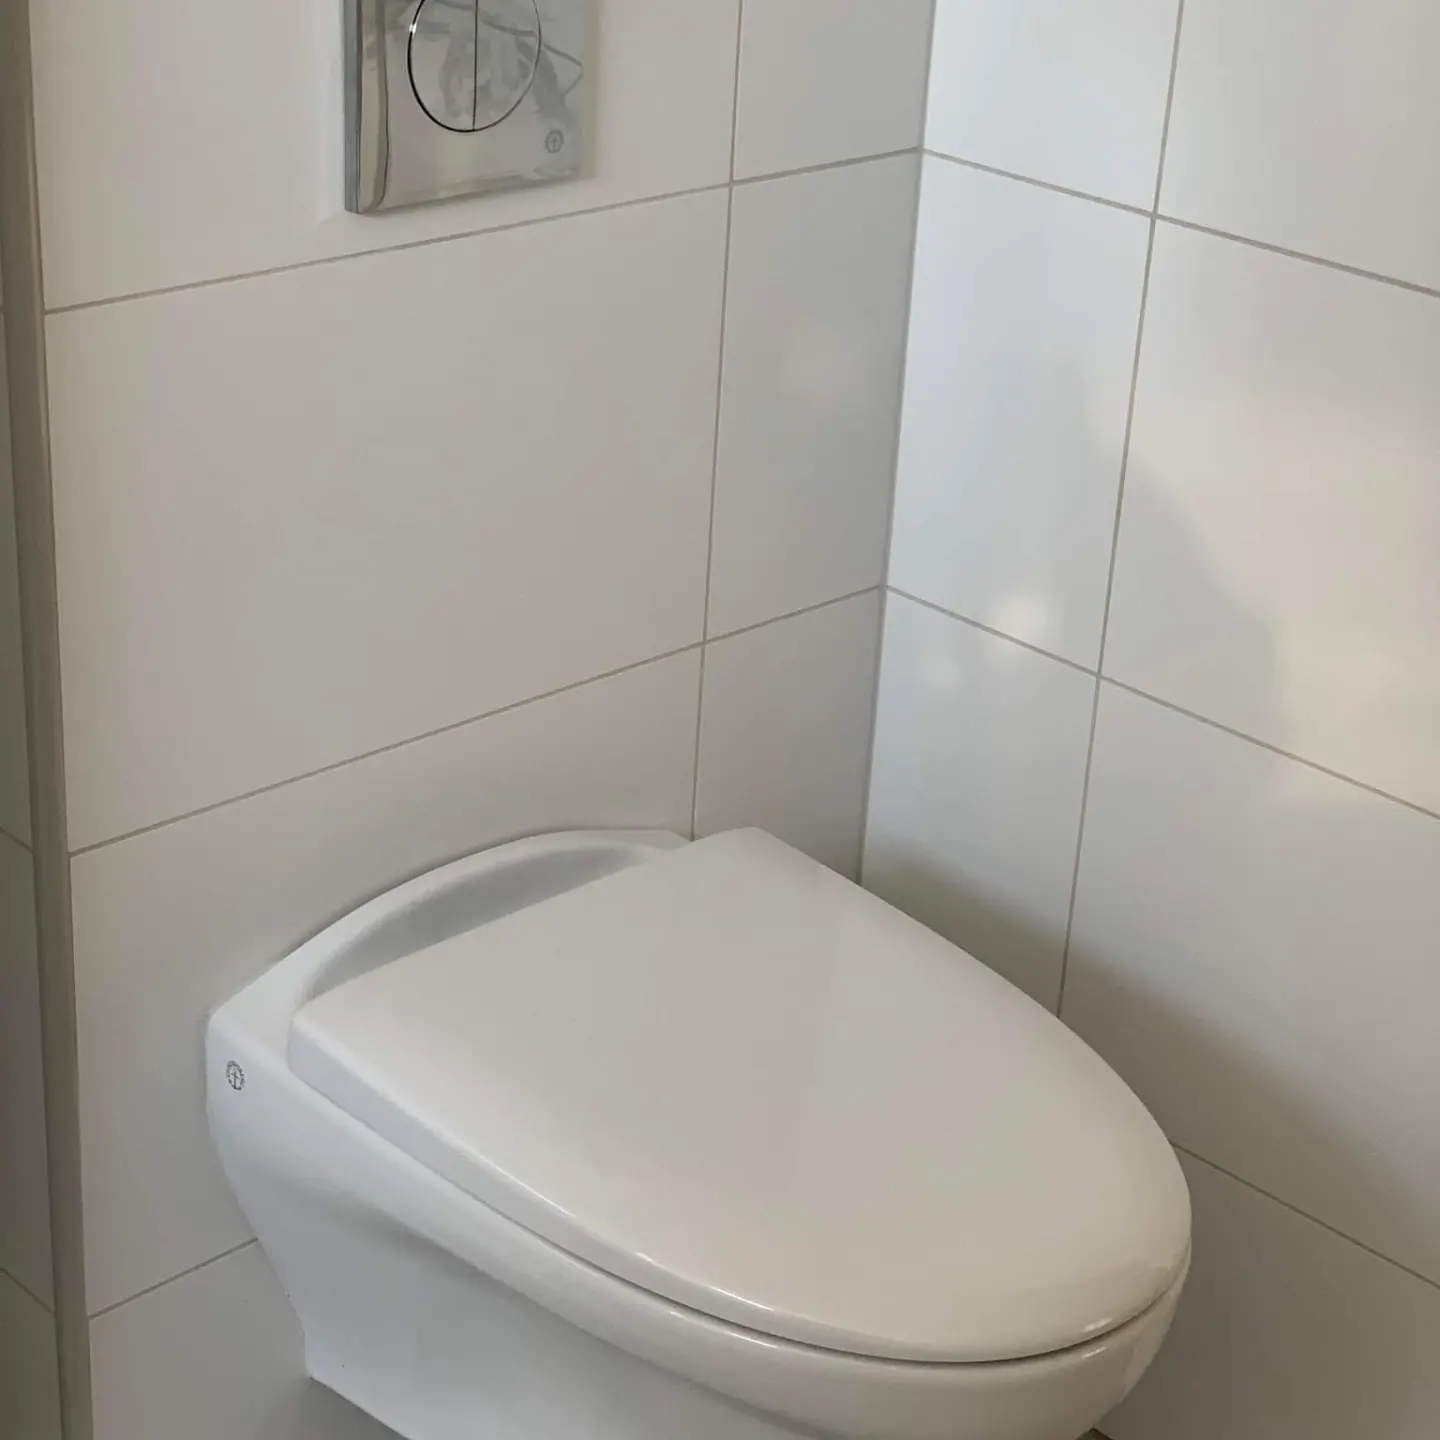 Referensjobb "Installation toalettstol" utfört av BR Rör service